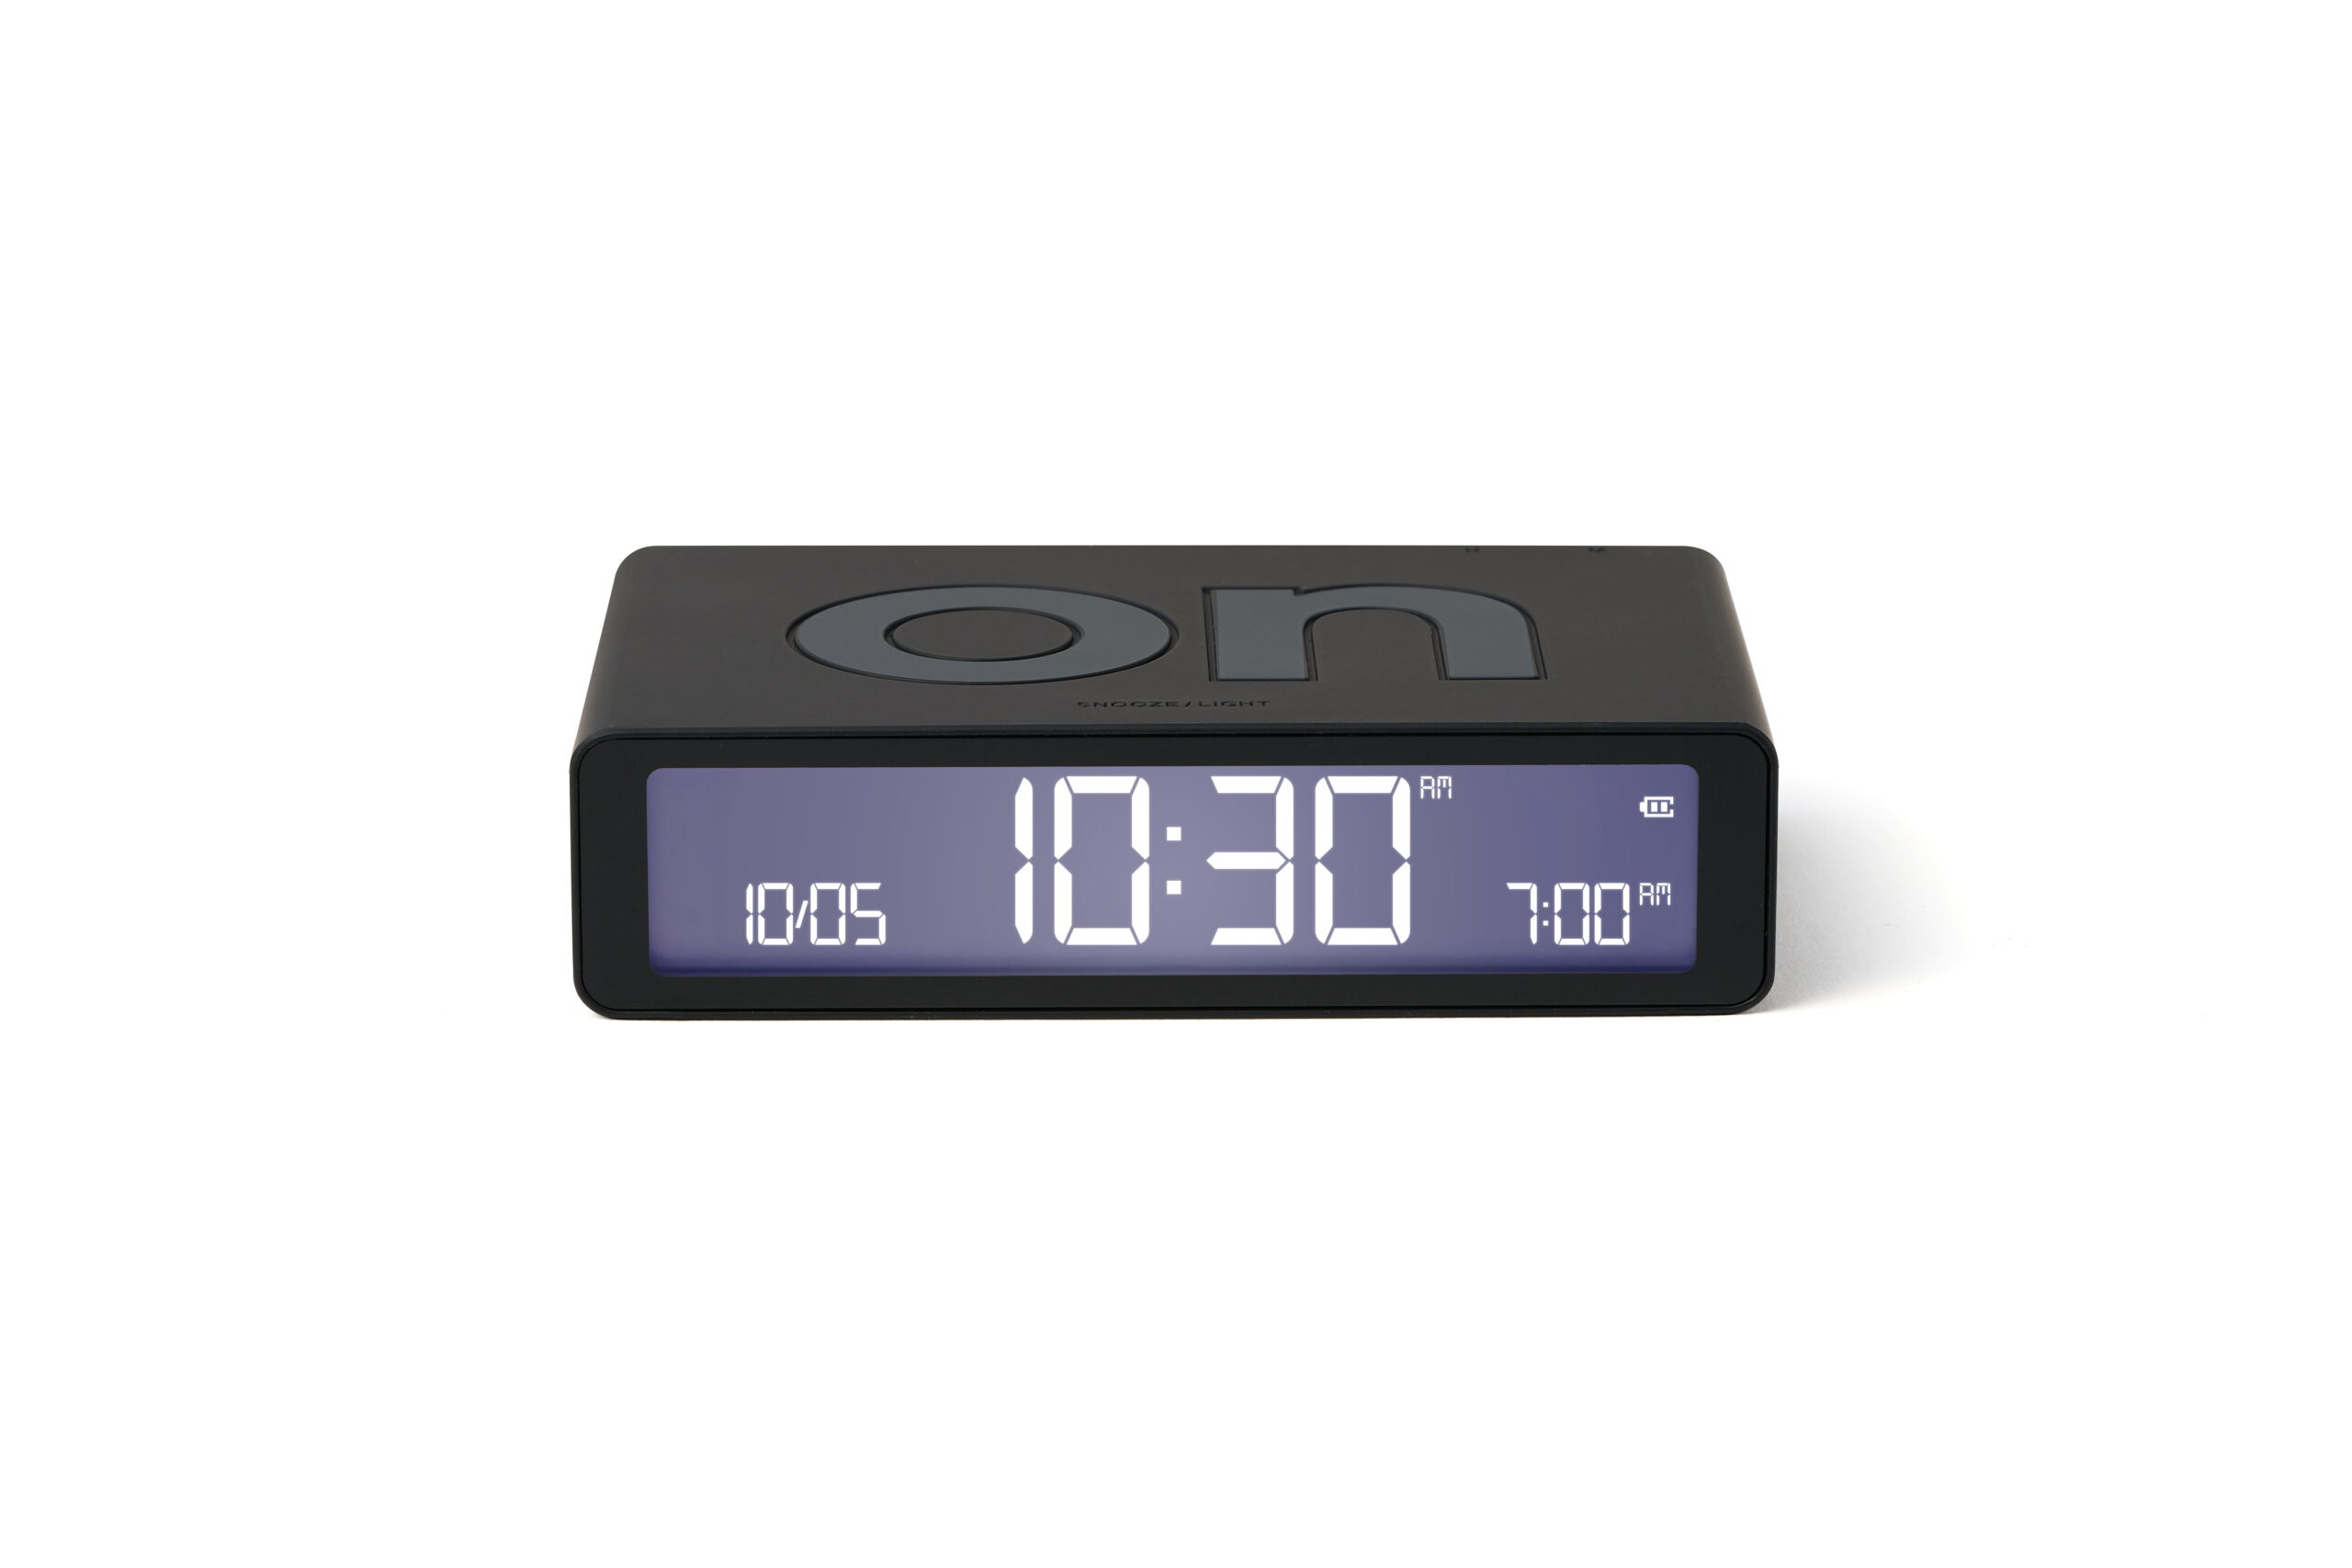 Lexon Design Flip Classic Alarm Clock